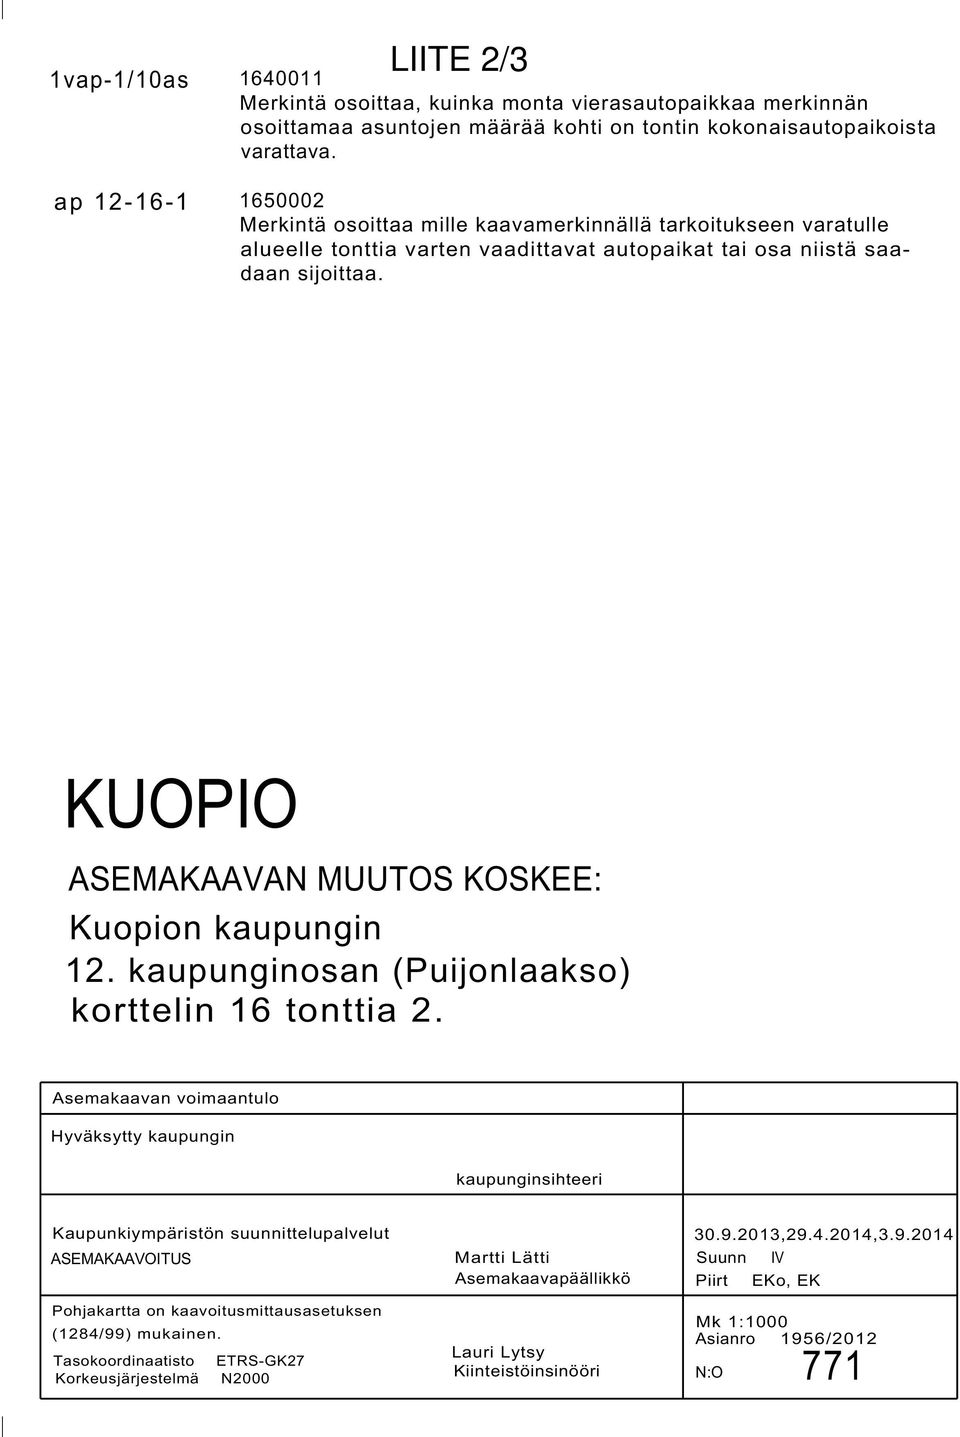 KUOPIO ASEMAKAAVAN MUUTOS KOSKEE: Kuopion kaupungin. kaupunginosan (Puijonlaakso) korttelin tonttia.